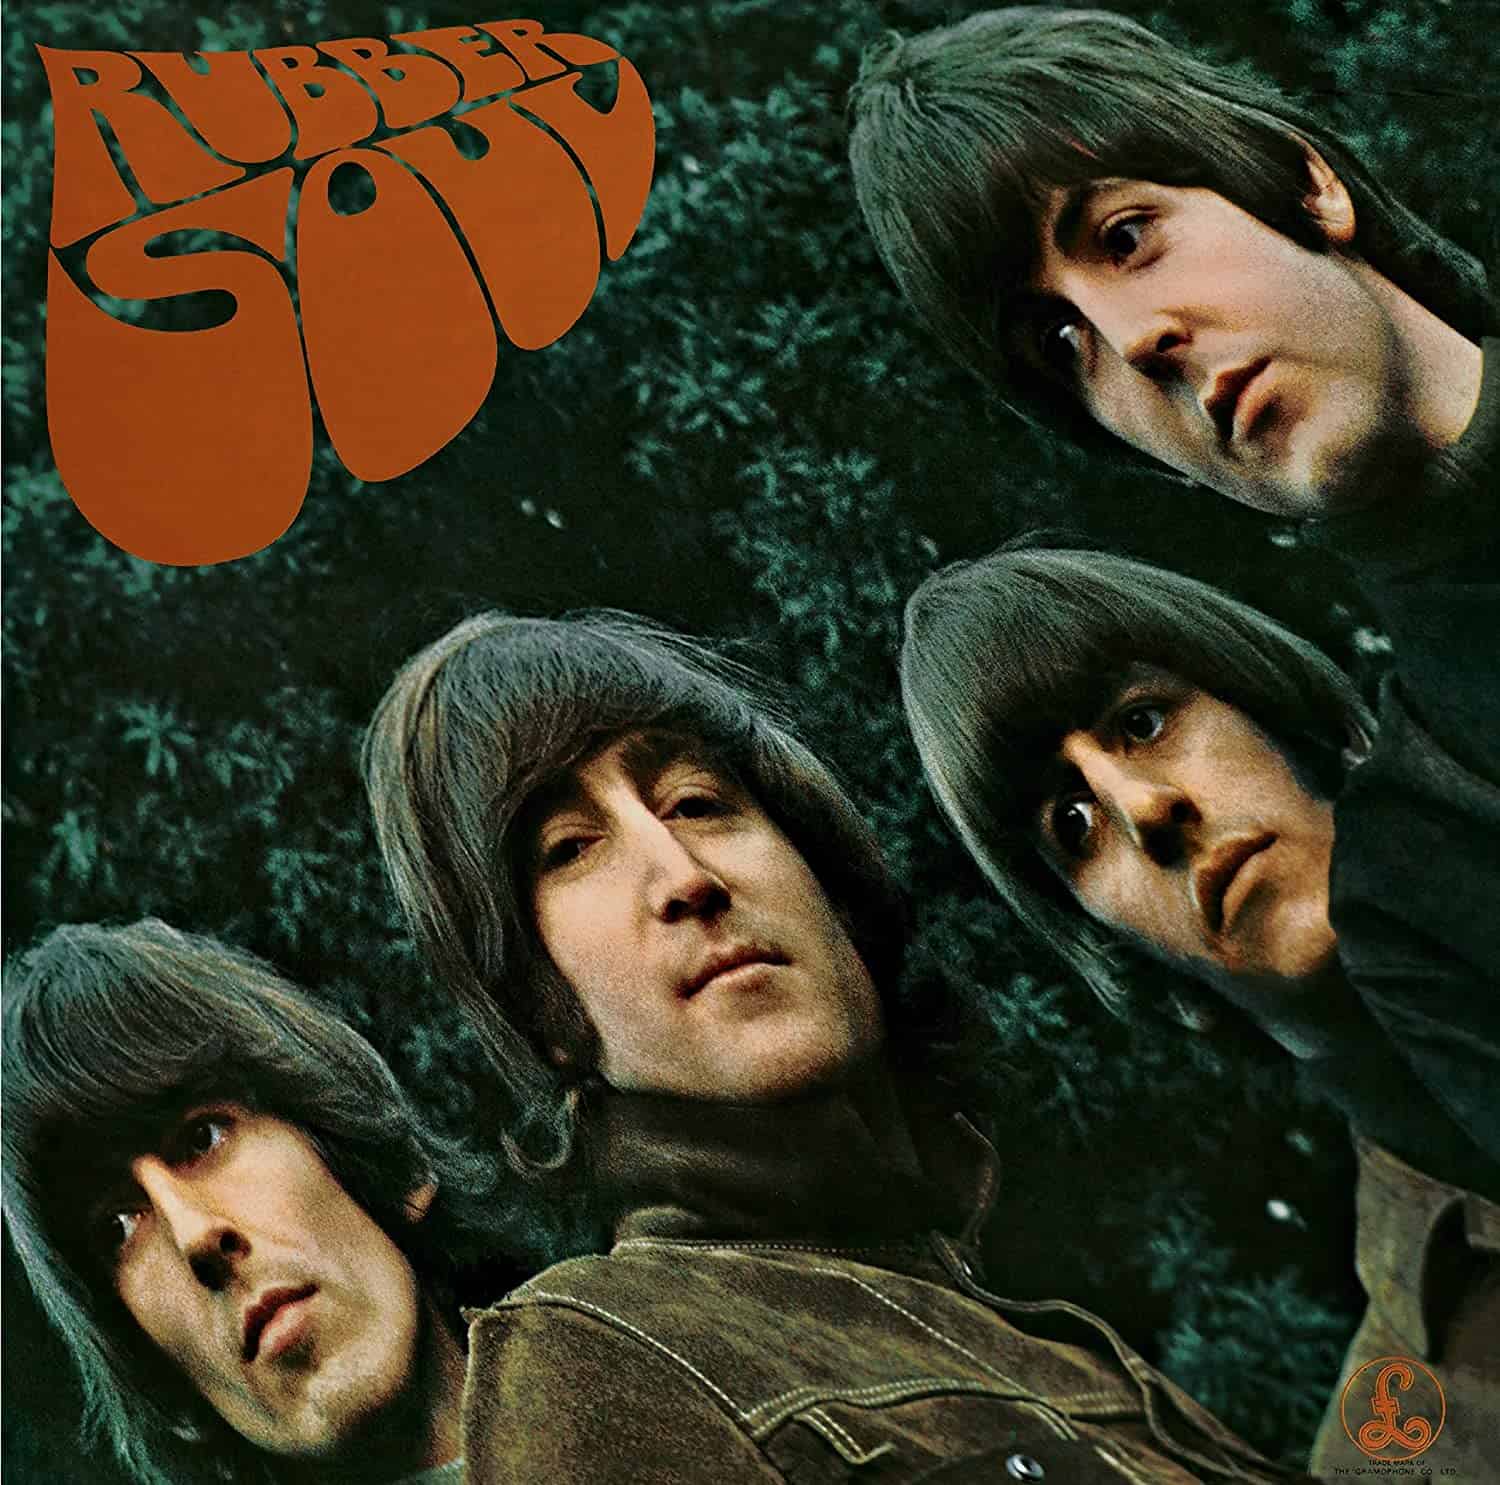 Beatles-Rubber-Soul-vinyl-record-album-front-cover